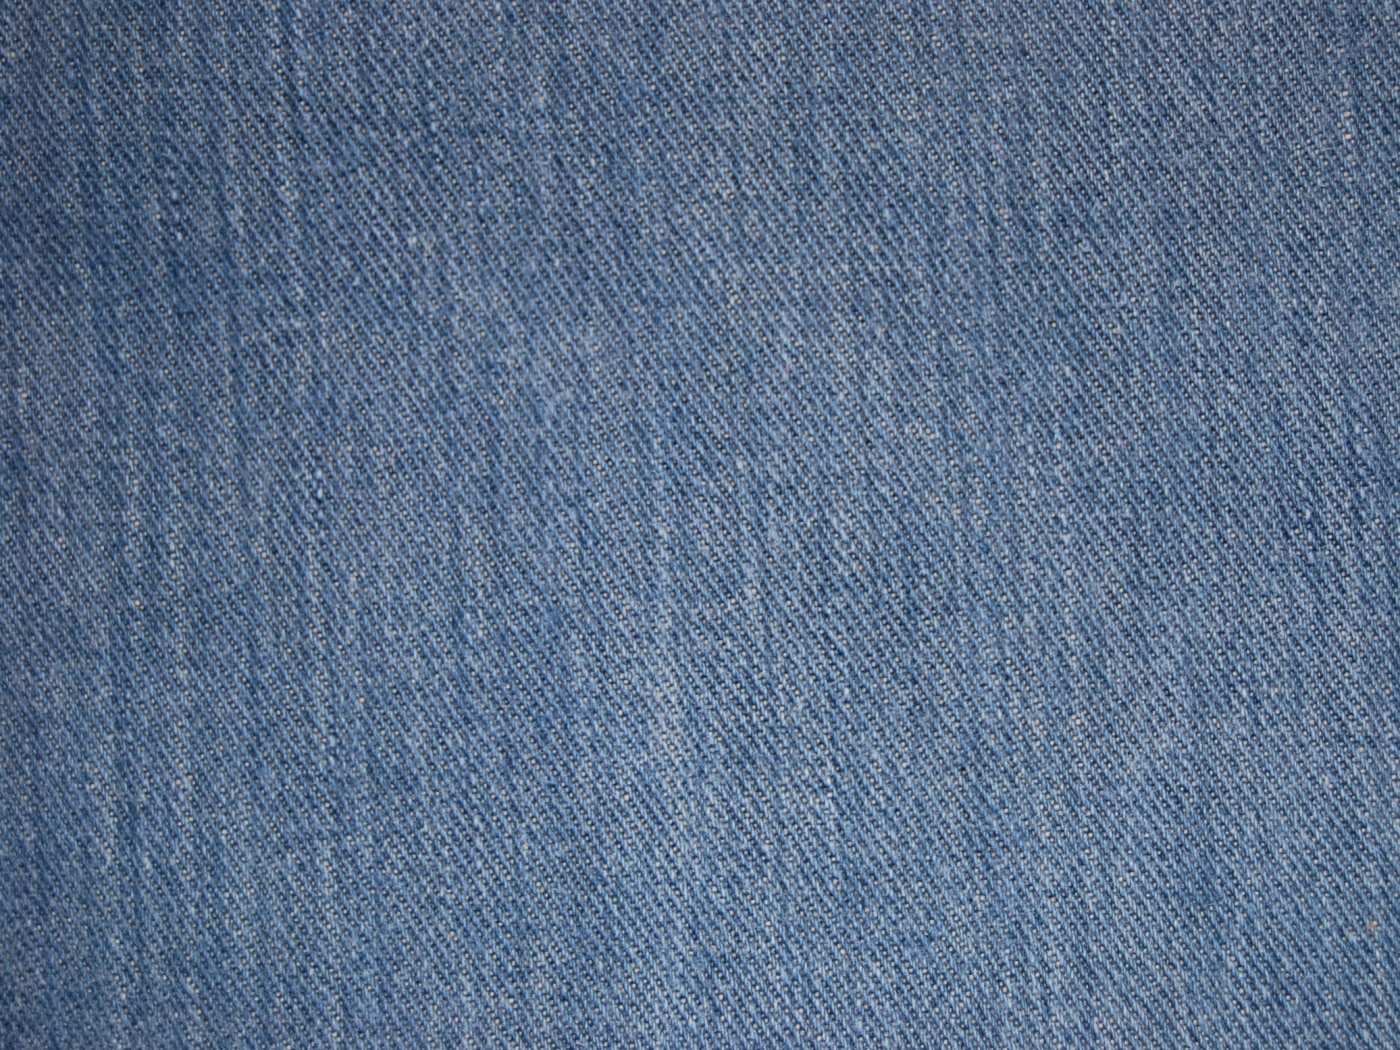 джинс текстура синяя скачать